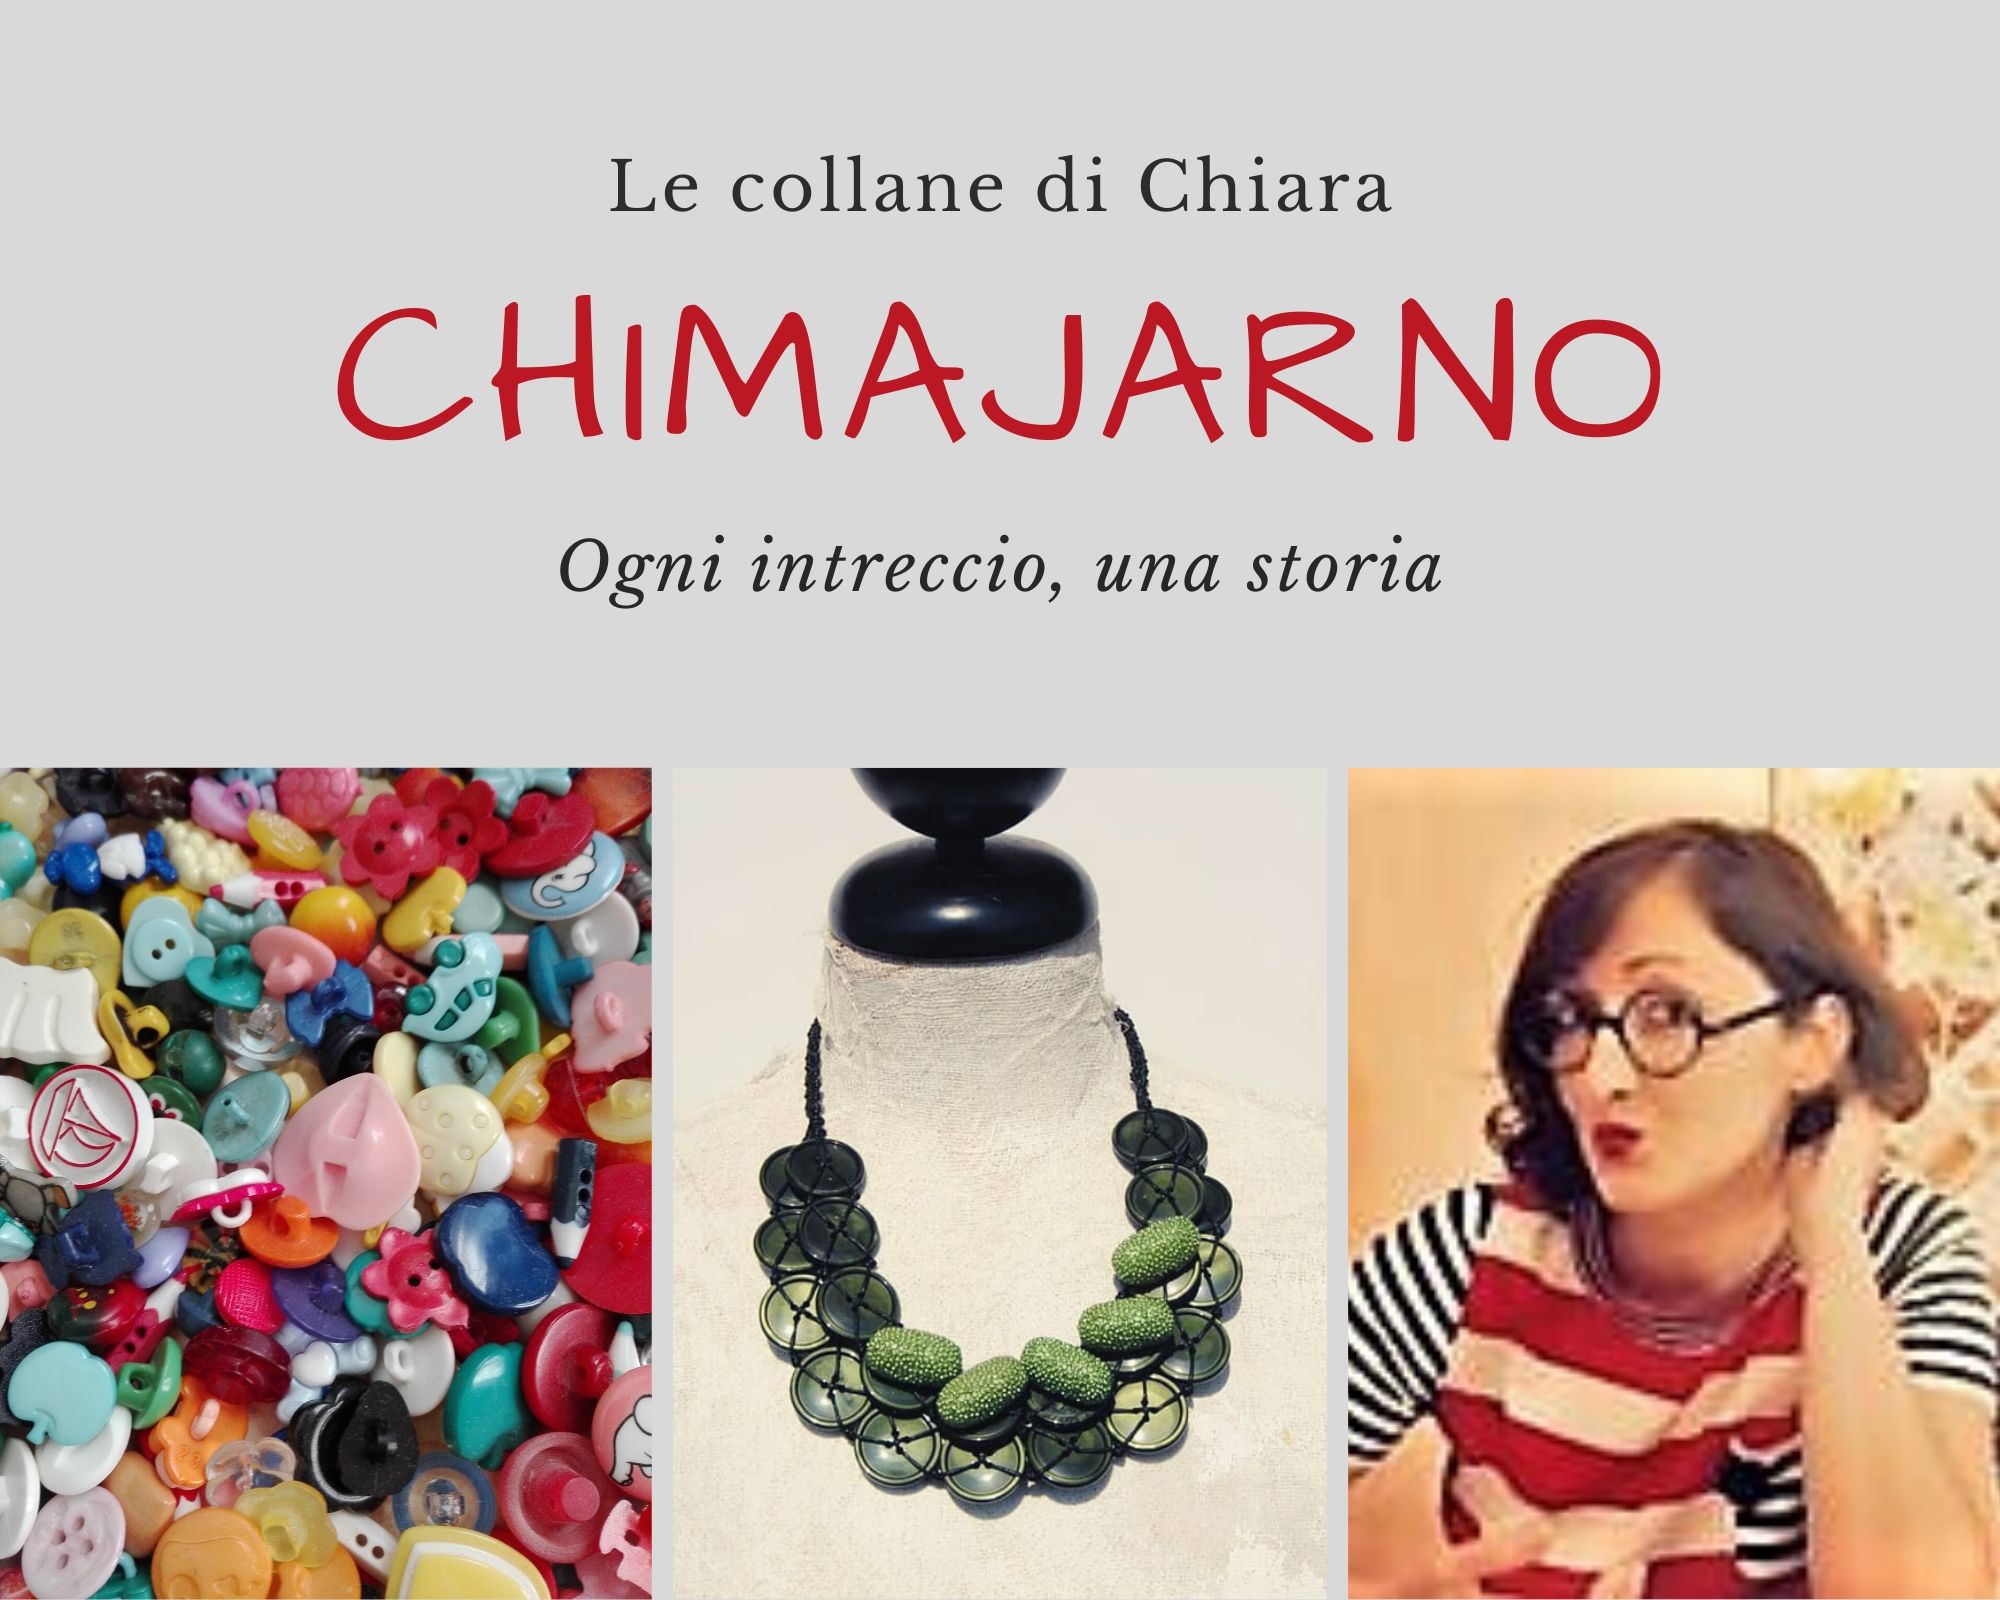 Le collane di bottoni di Chiara, alias Chimajarno, sono aggregazioni di bottoni da indossare: ognuna porta con sé ricordi e racconti, aggregati con una tecnica precisa e minuziosa.